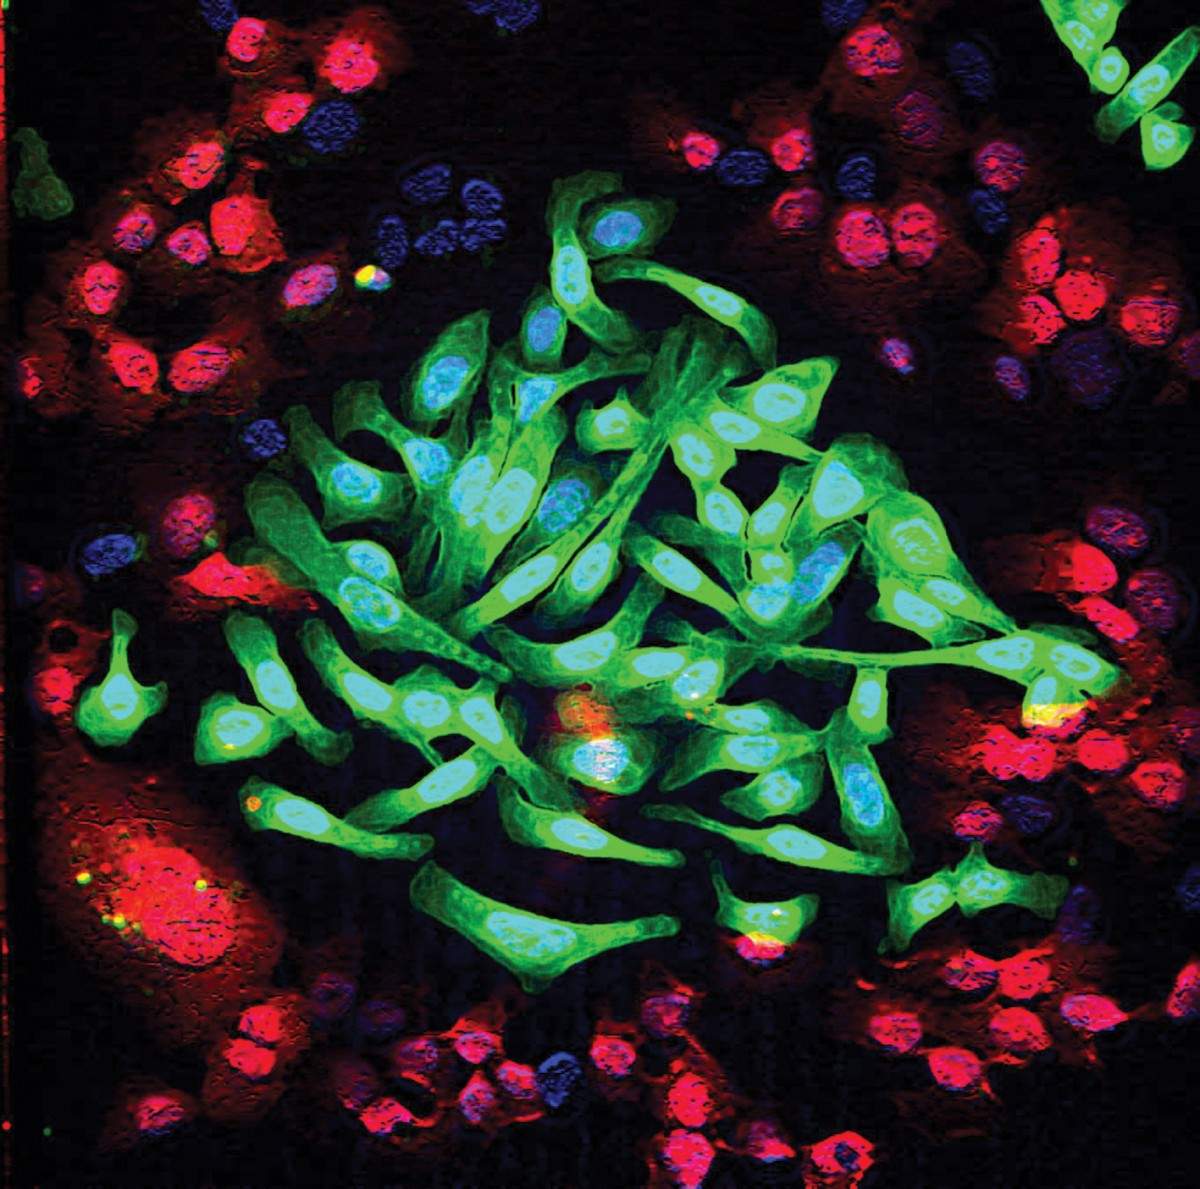 תאי סרטן ריאות (בירוק) מעורבים בתרבית עם תאי ריאות רגילים (באדום). הטיפול המשולב, באמצעות שלושה נוגדנים, מחליש מאוד את יכולת ההישרדות של תאי הגידול, אך אינו משפיע על התאים הרגילים. צילום מעובד ממיקרוסקופ קונפוקלי: מייקול מנציני ממעבדתו של פרופ' יוסי ירדן